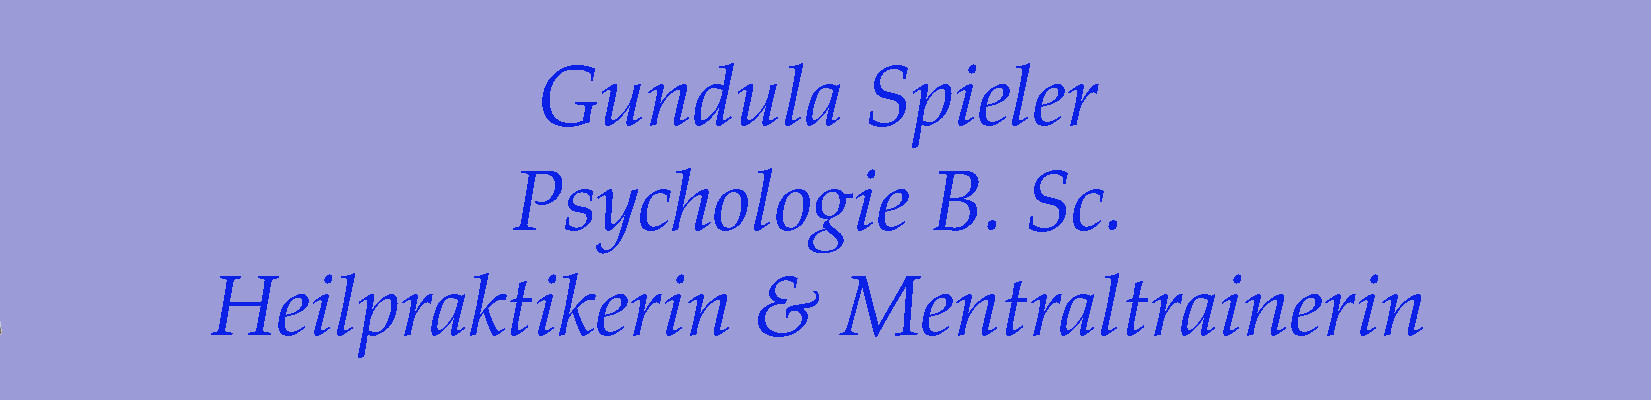 Gundula Spieler, Psychologie B. Sc., Heilpraktikerin, Mentaltrainerin 